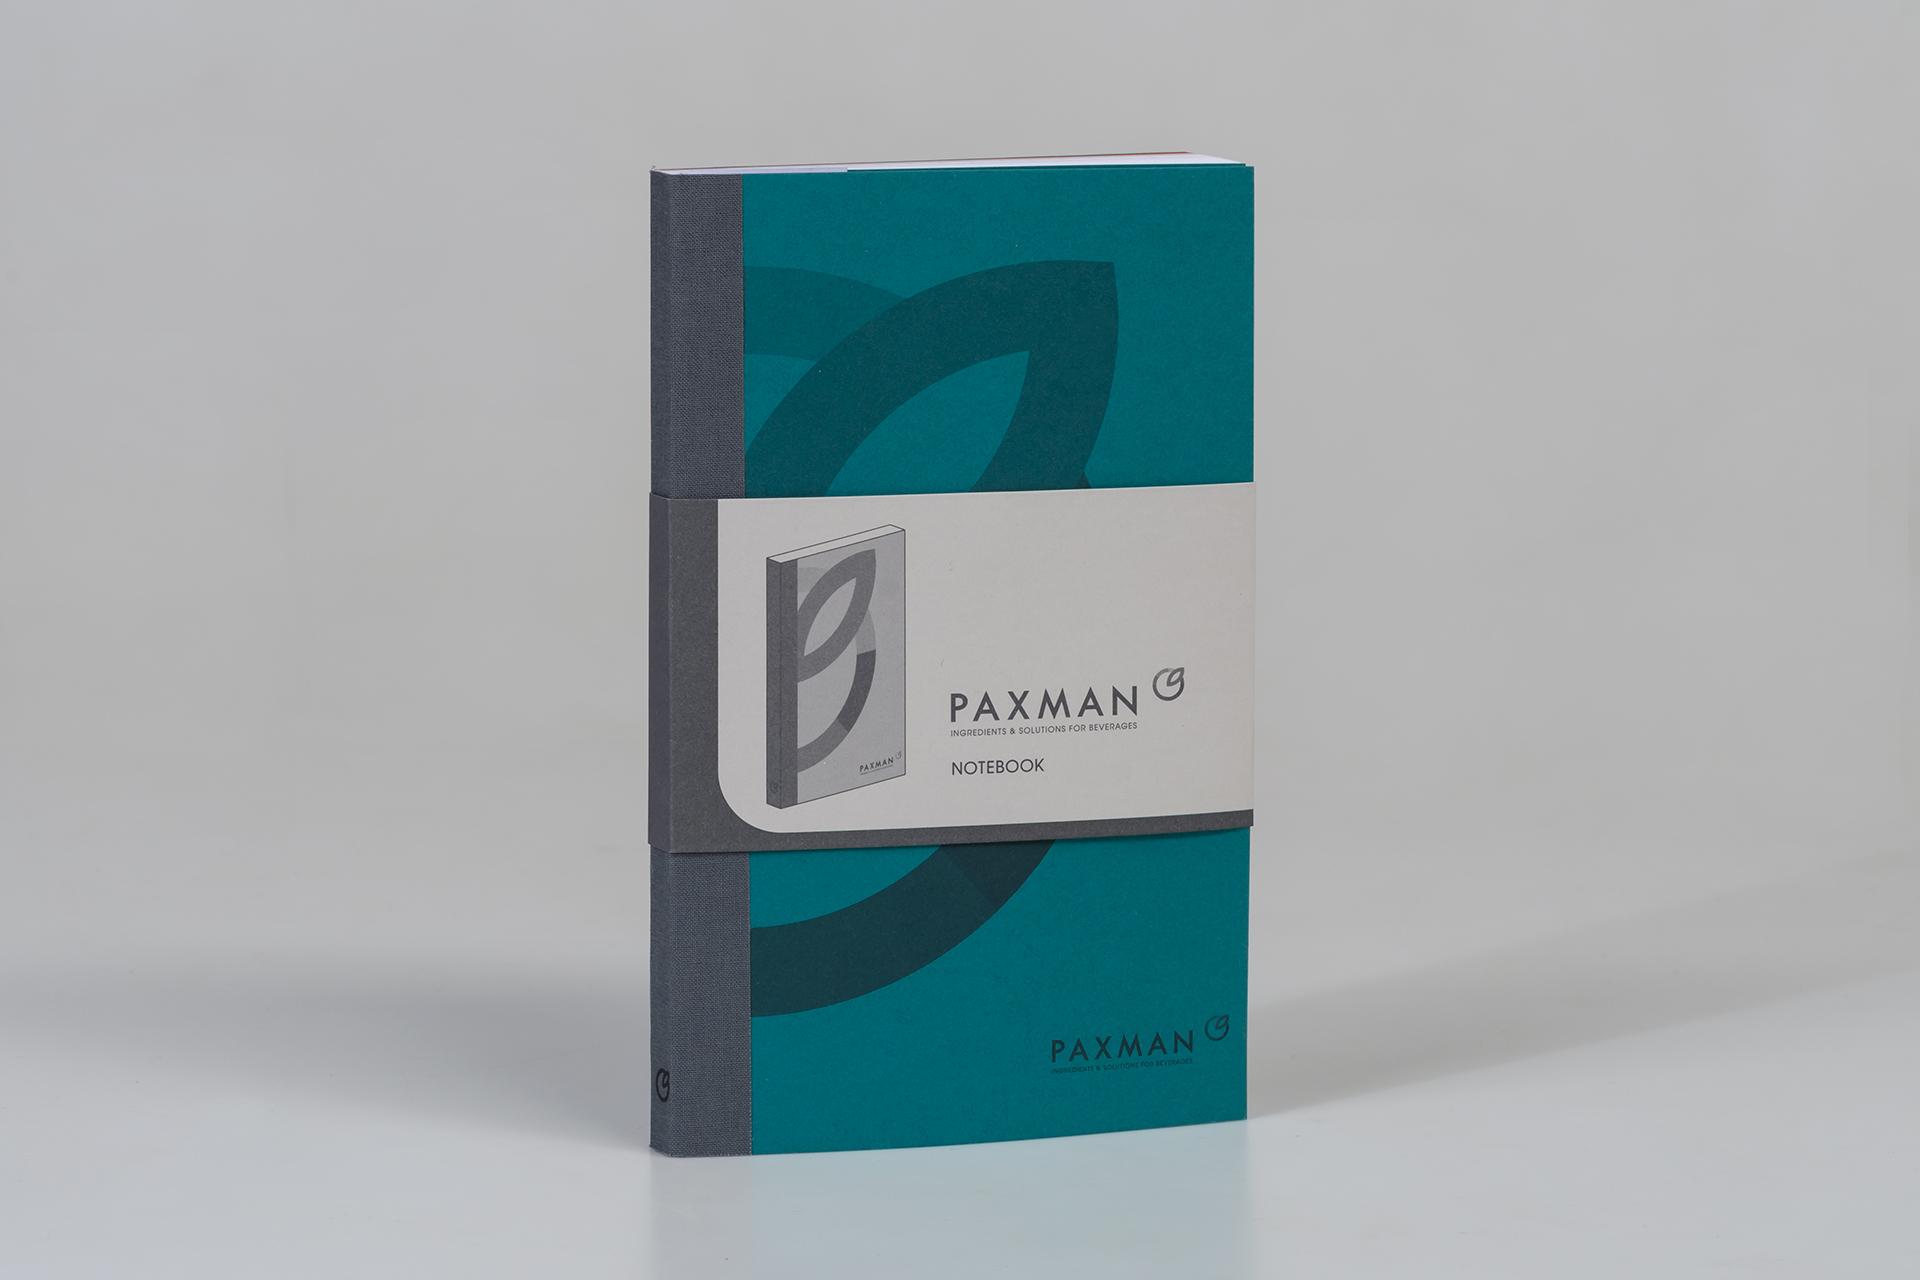 Paxman notebook cover wrap